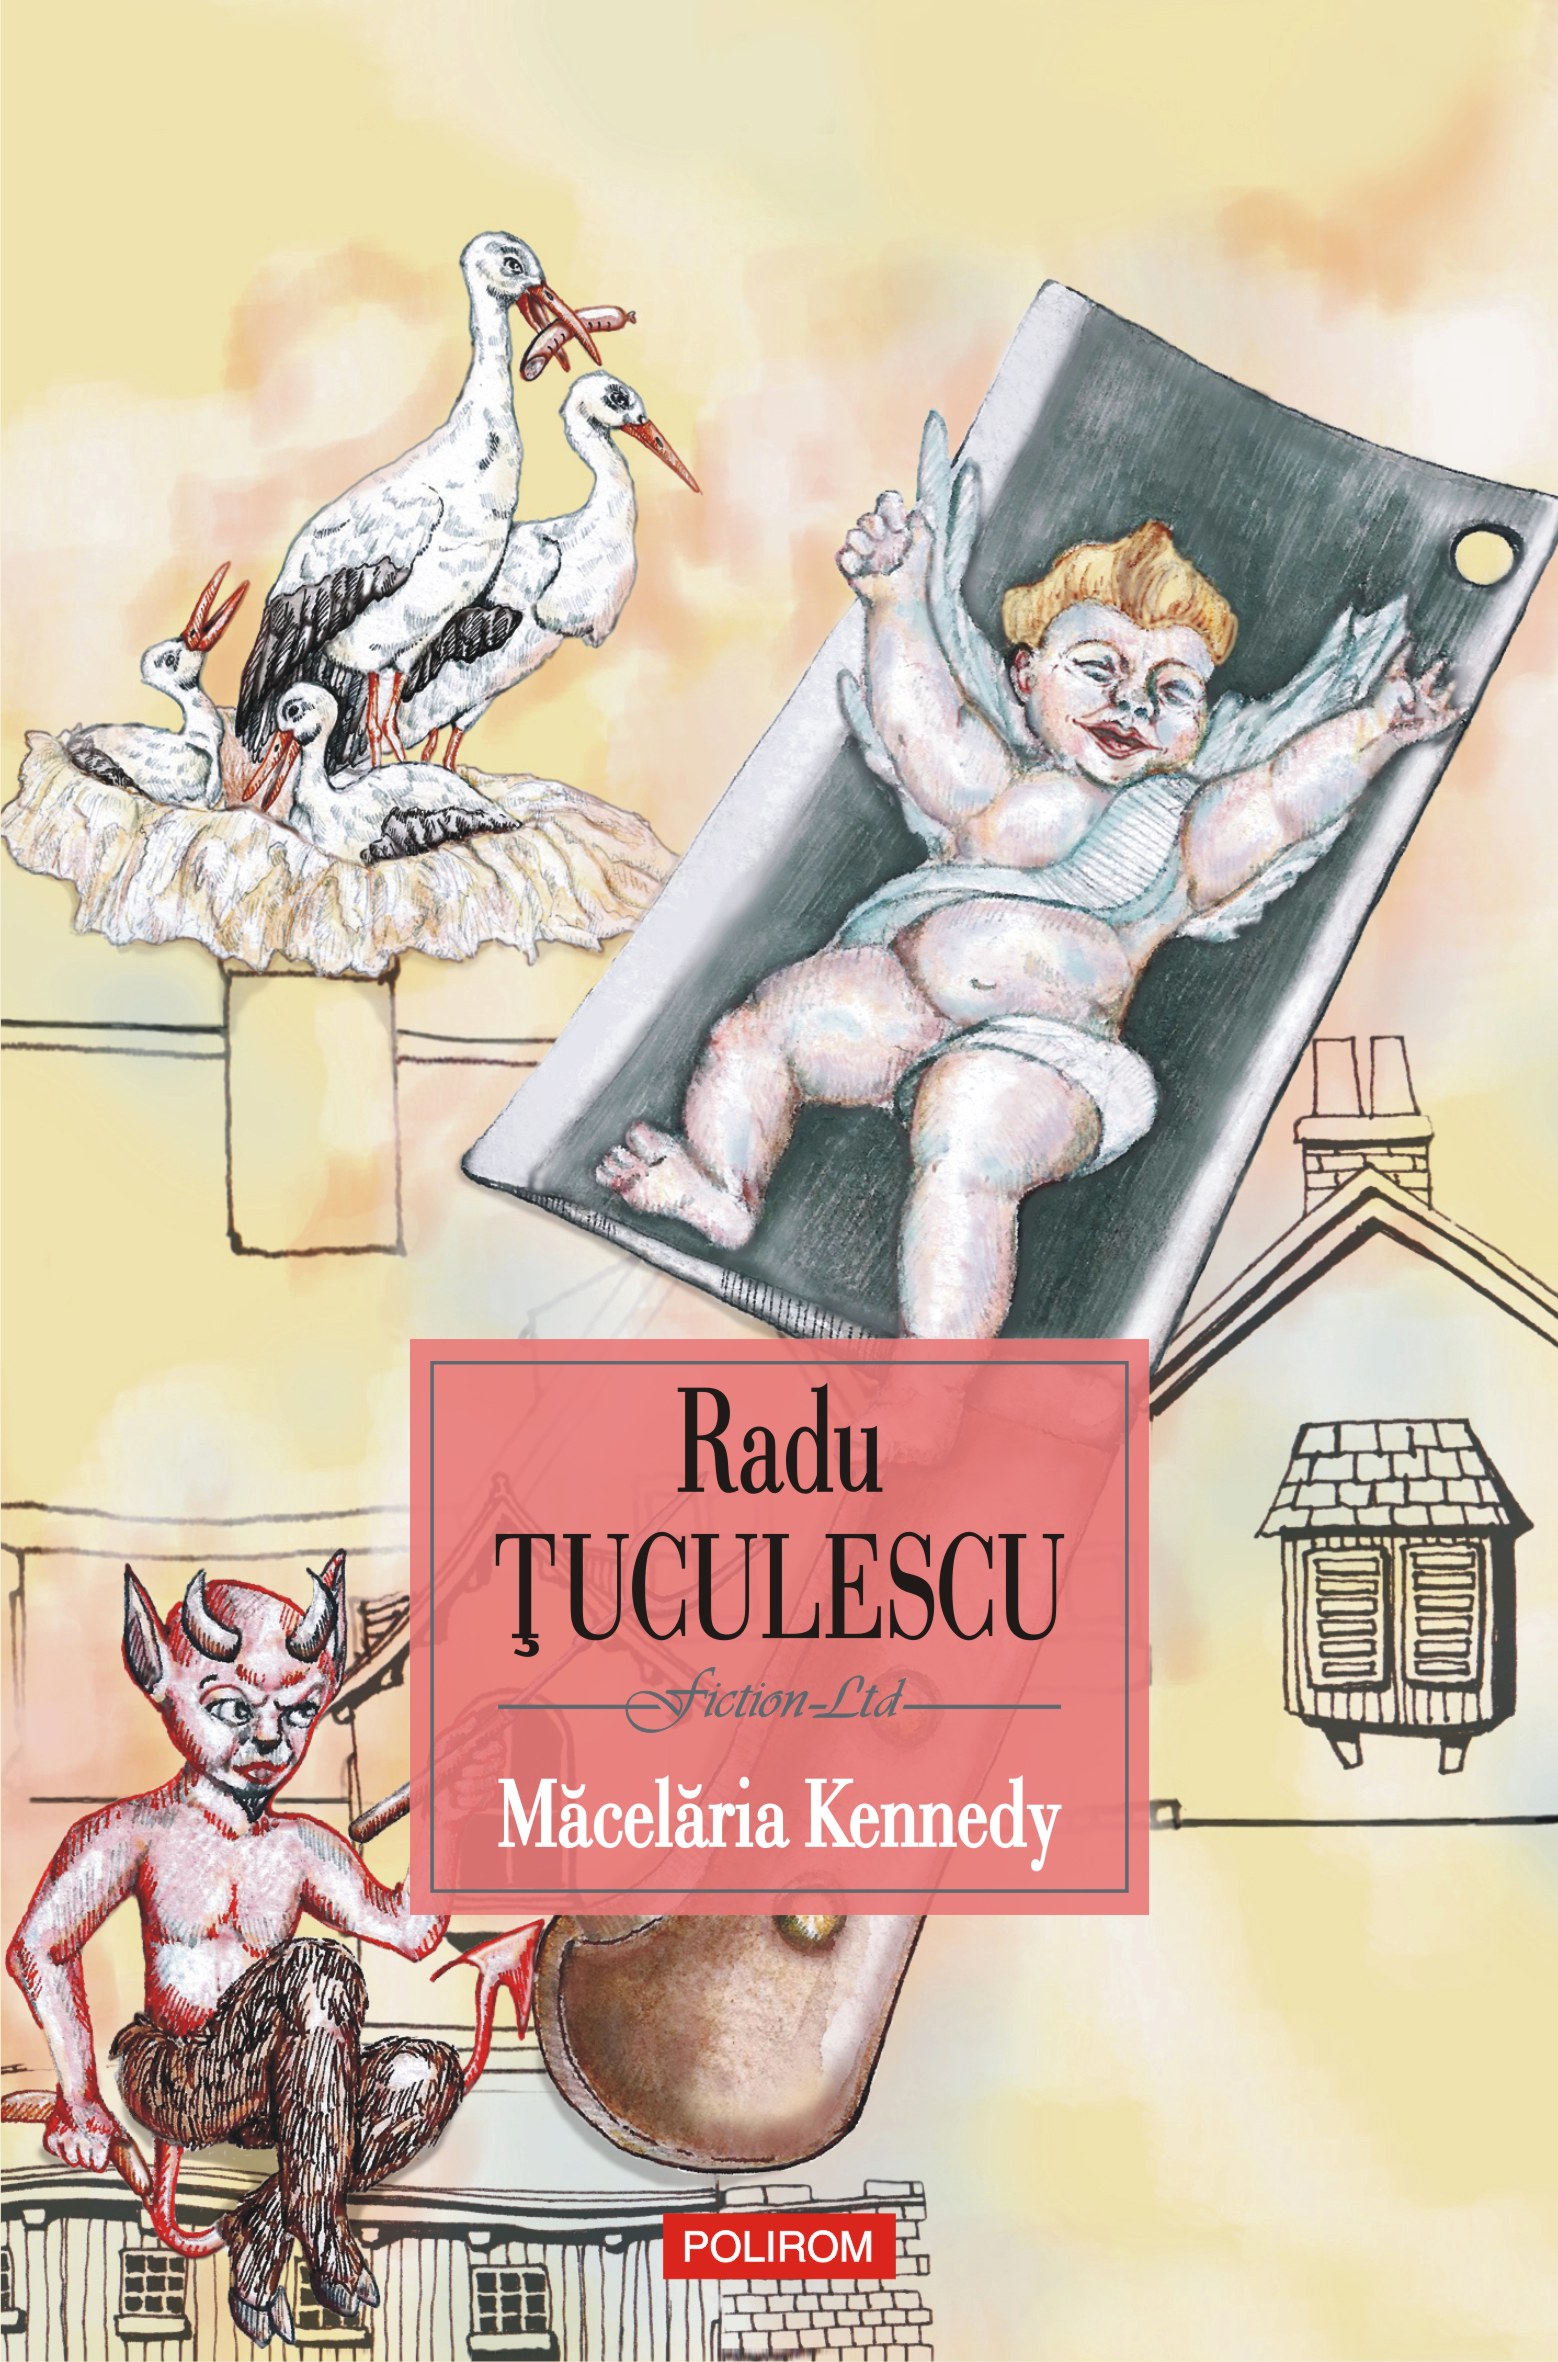 eBook Macelaria Kennedy - Radu tuculescu